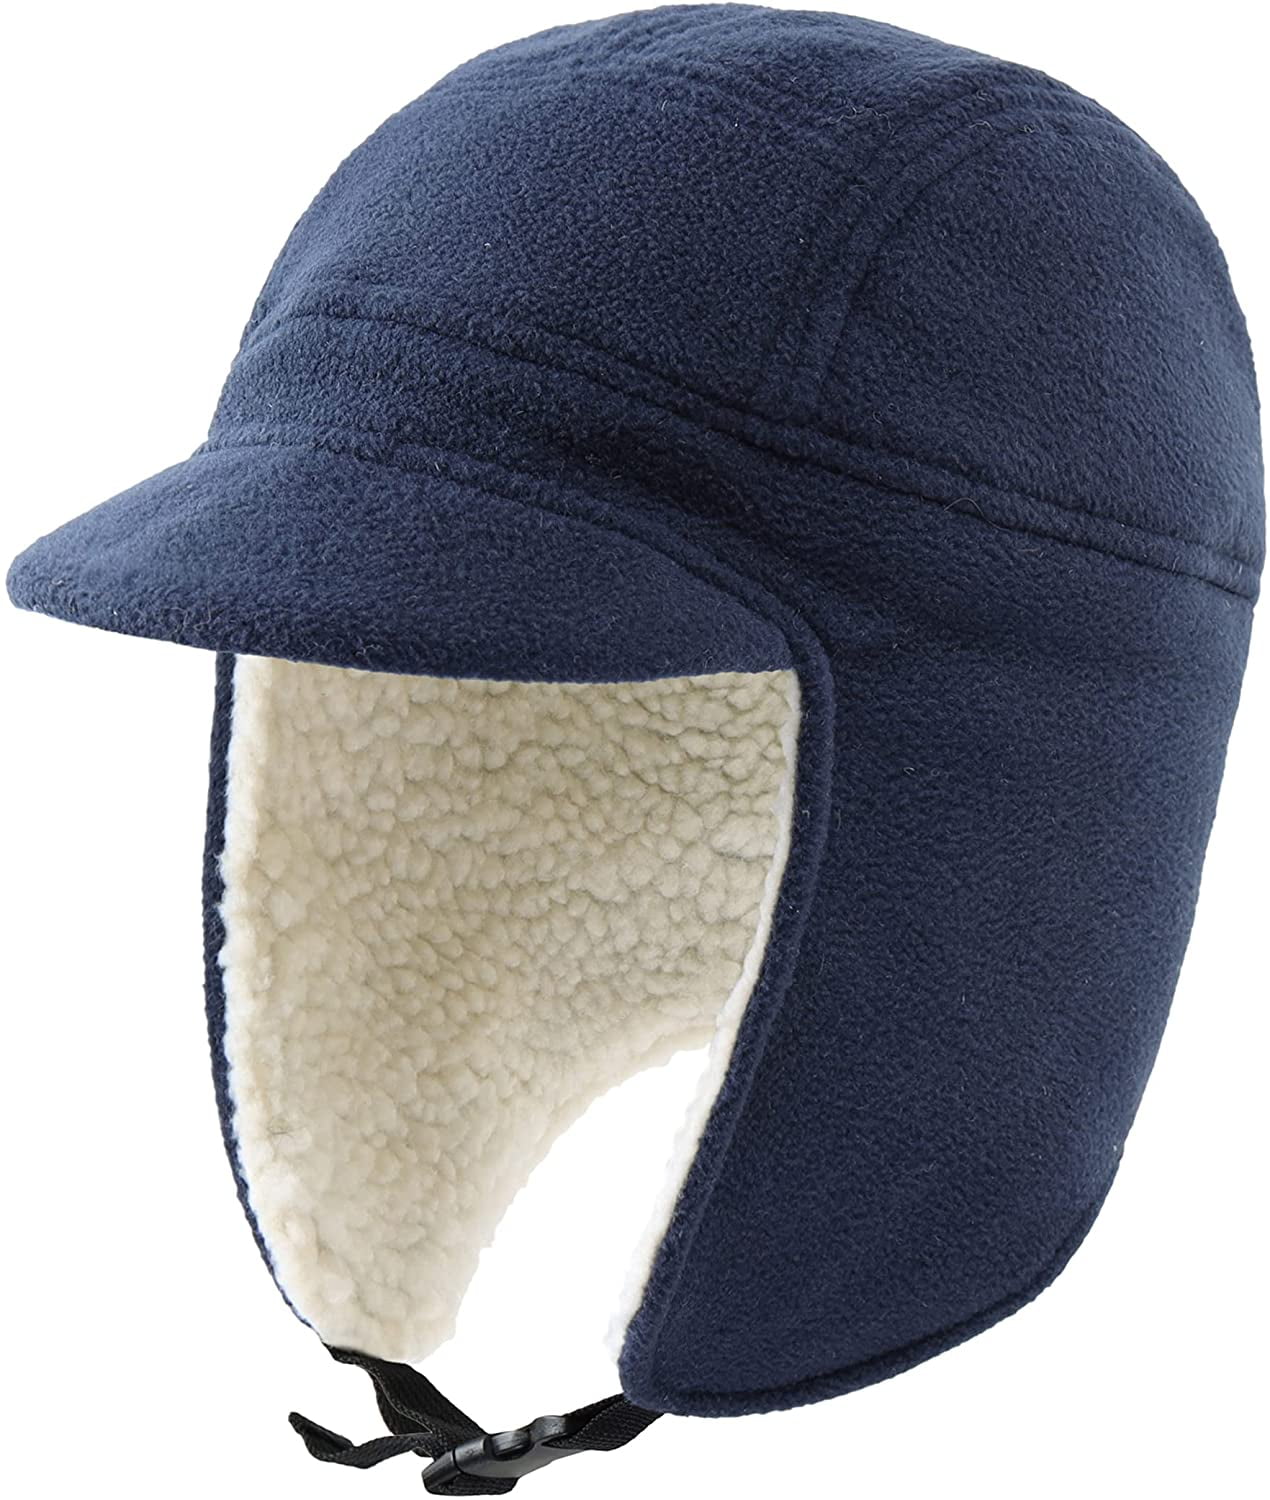 Result Trapper Hat Thinsulate 3M Russian Sherpa Winter Fleece Ear Flap Warm  Cap